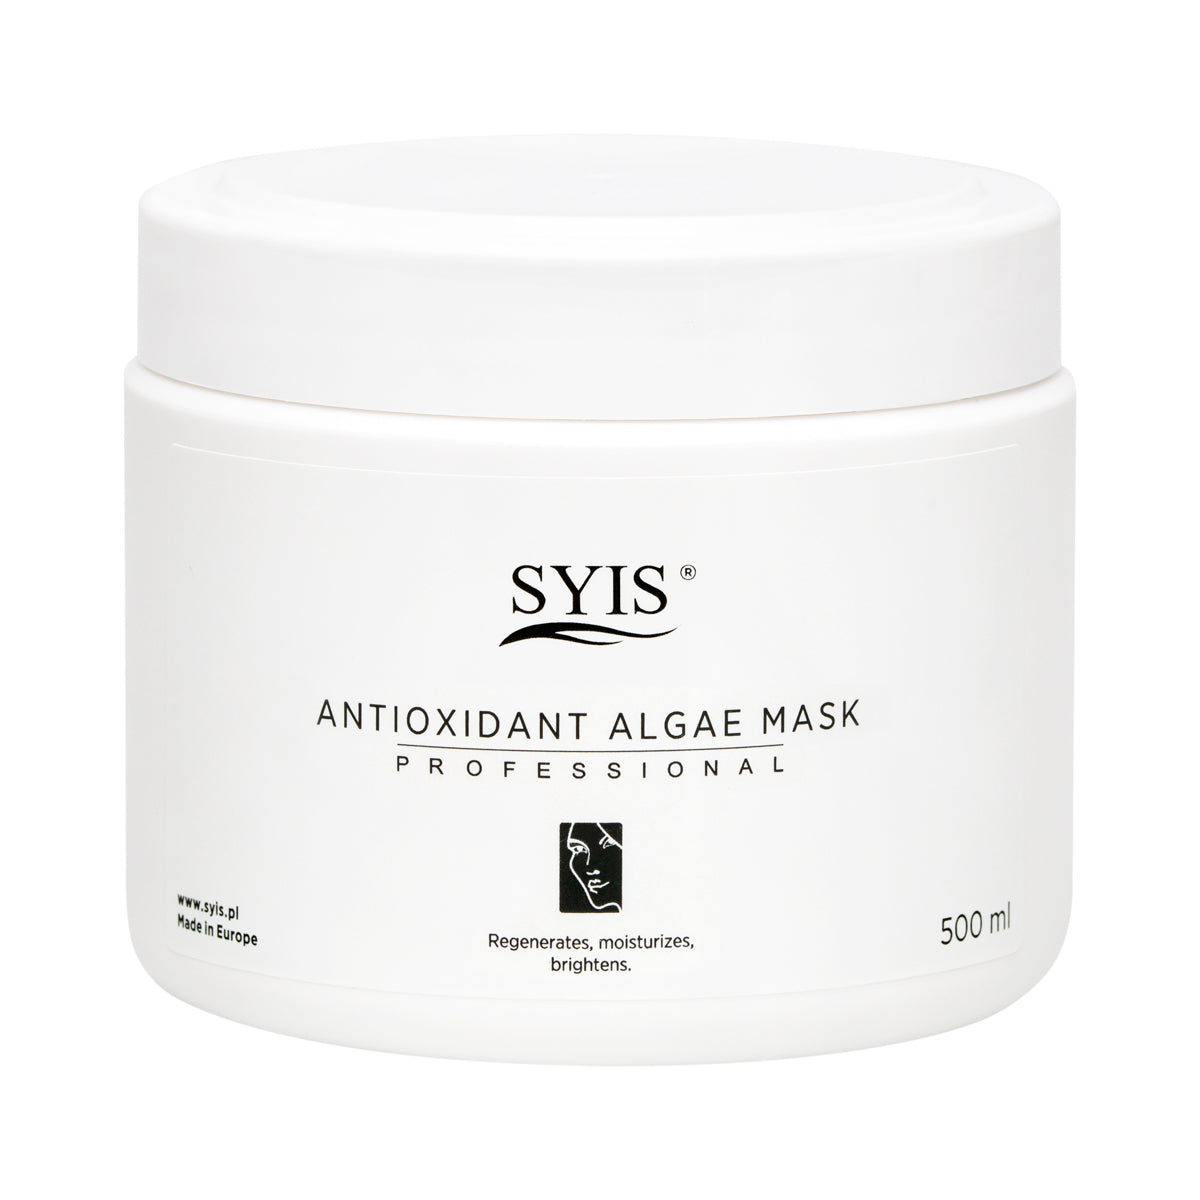 Syis Antioxidant Algae Mask 500 ml